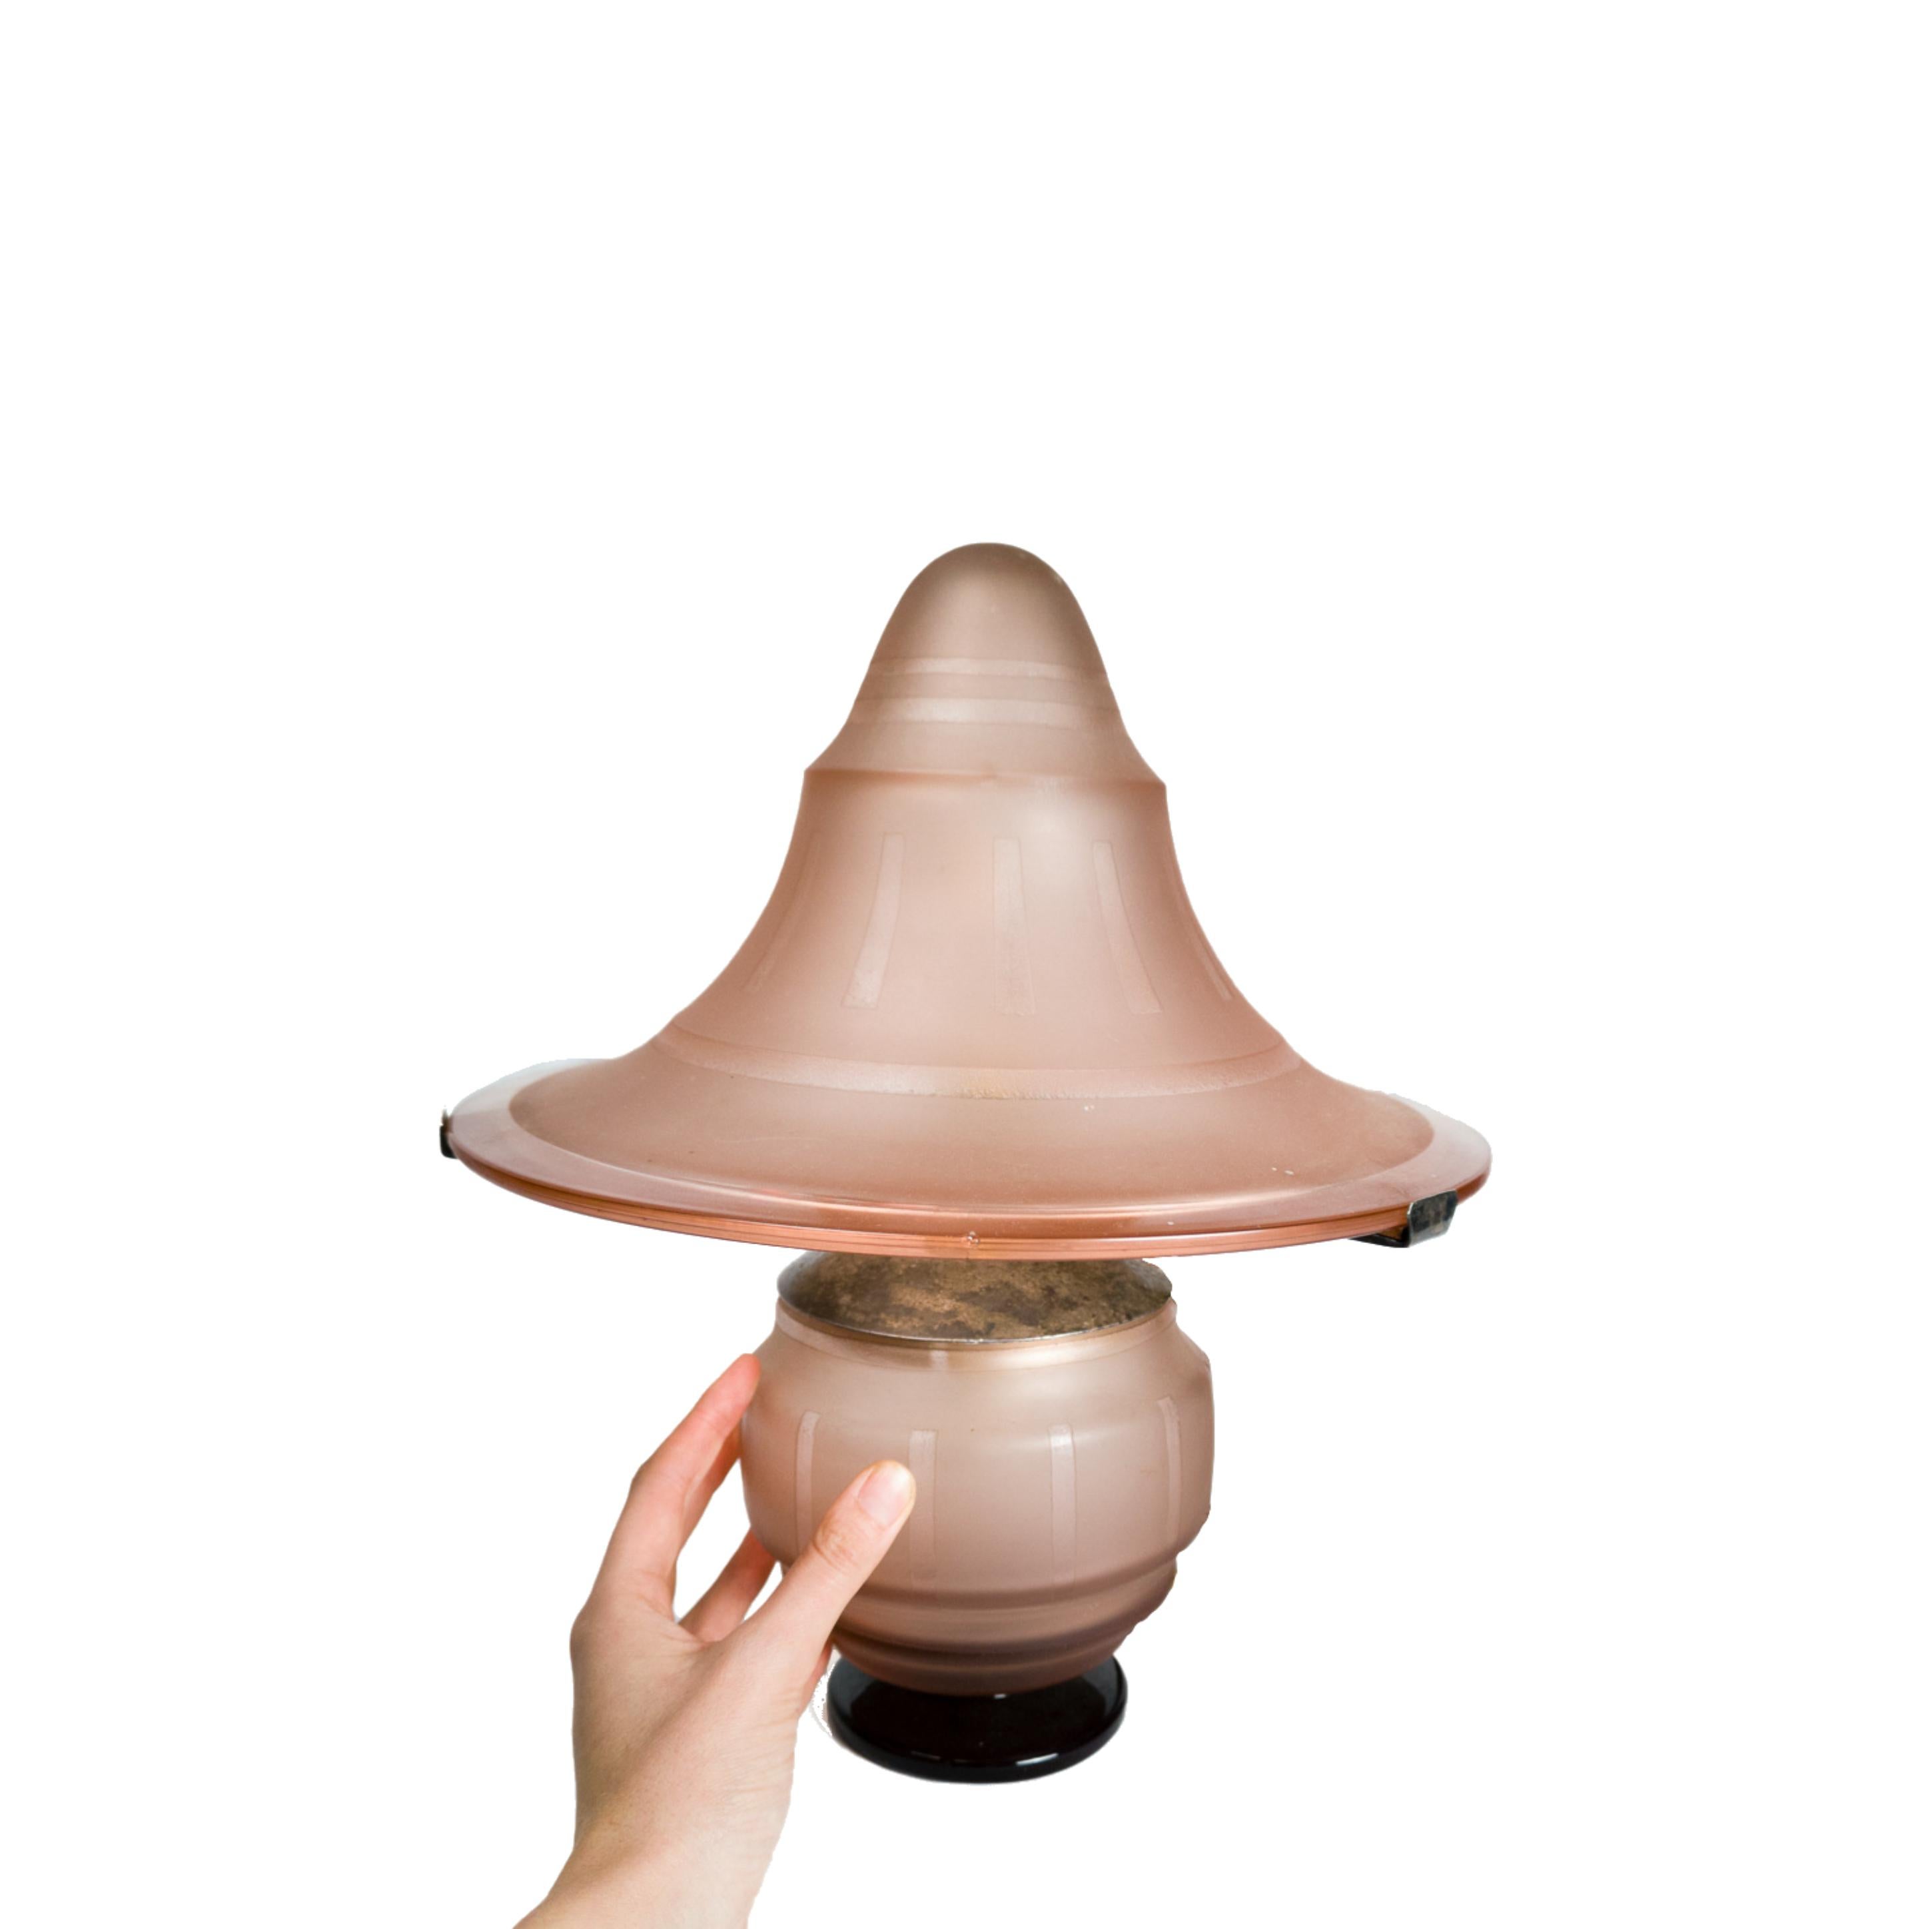 Lampe de table des années 1930 en forme de champignon, avec verre dépoli rose et structure supérieure en métal, provenant des forges de Nancy.

